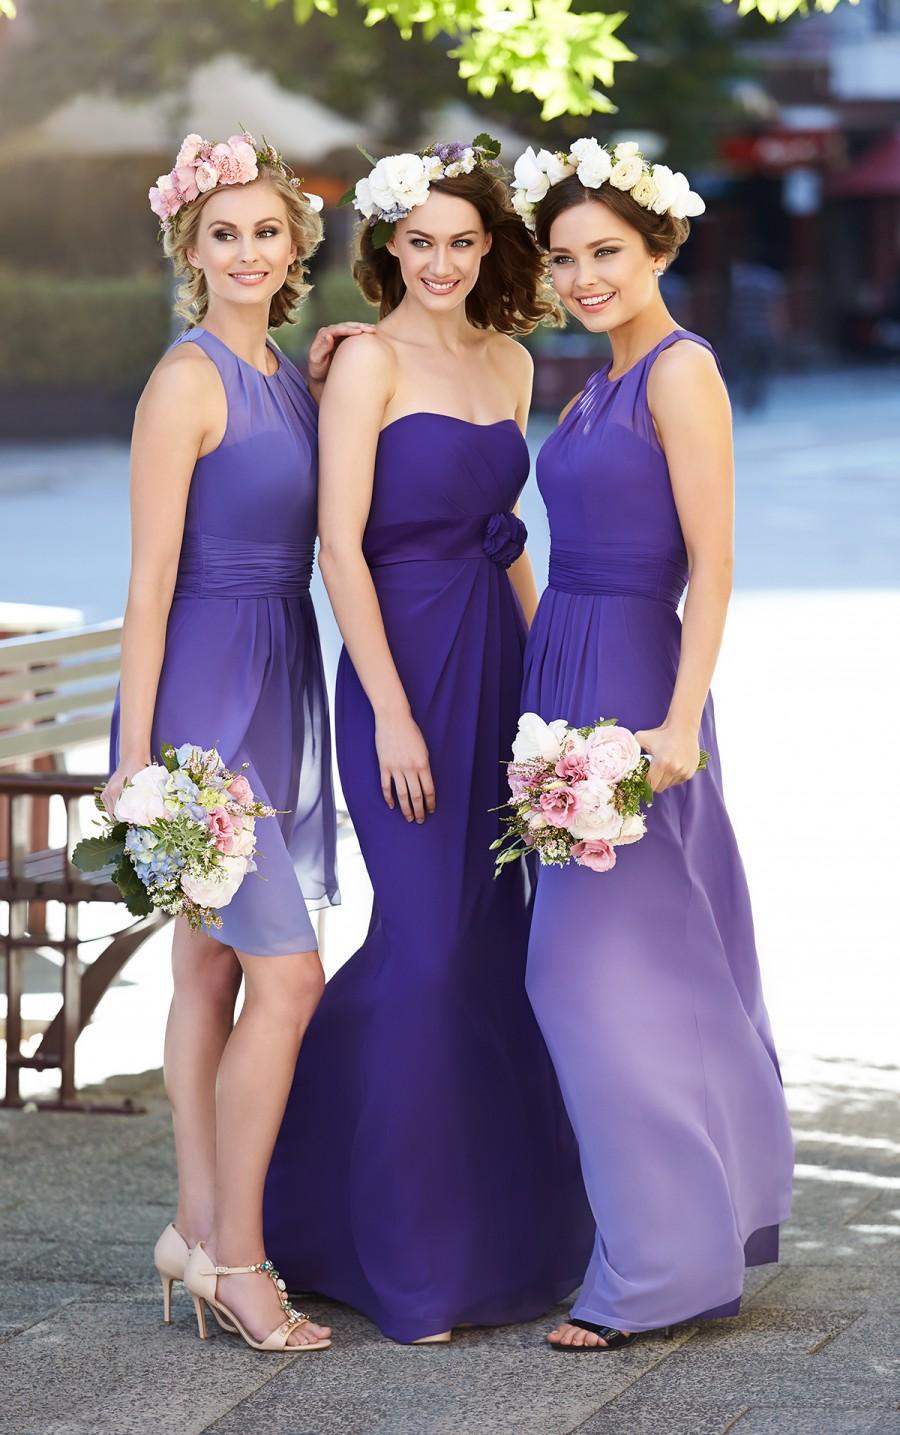 Hochzeit - Sorella Vita Ombre Bridesmaid Dress Style 8459OM